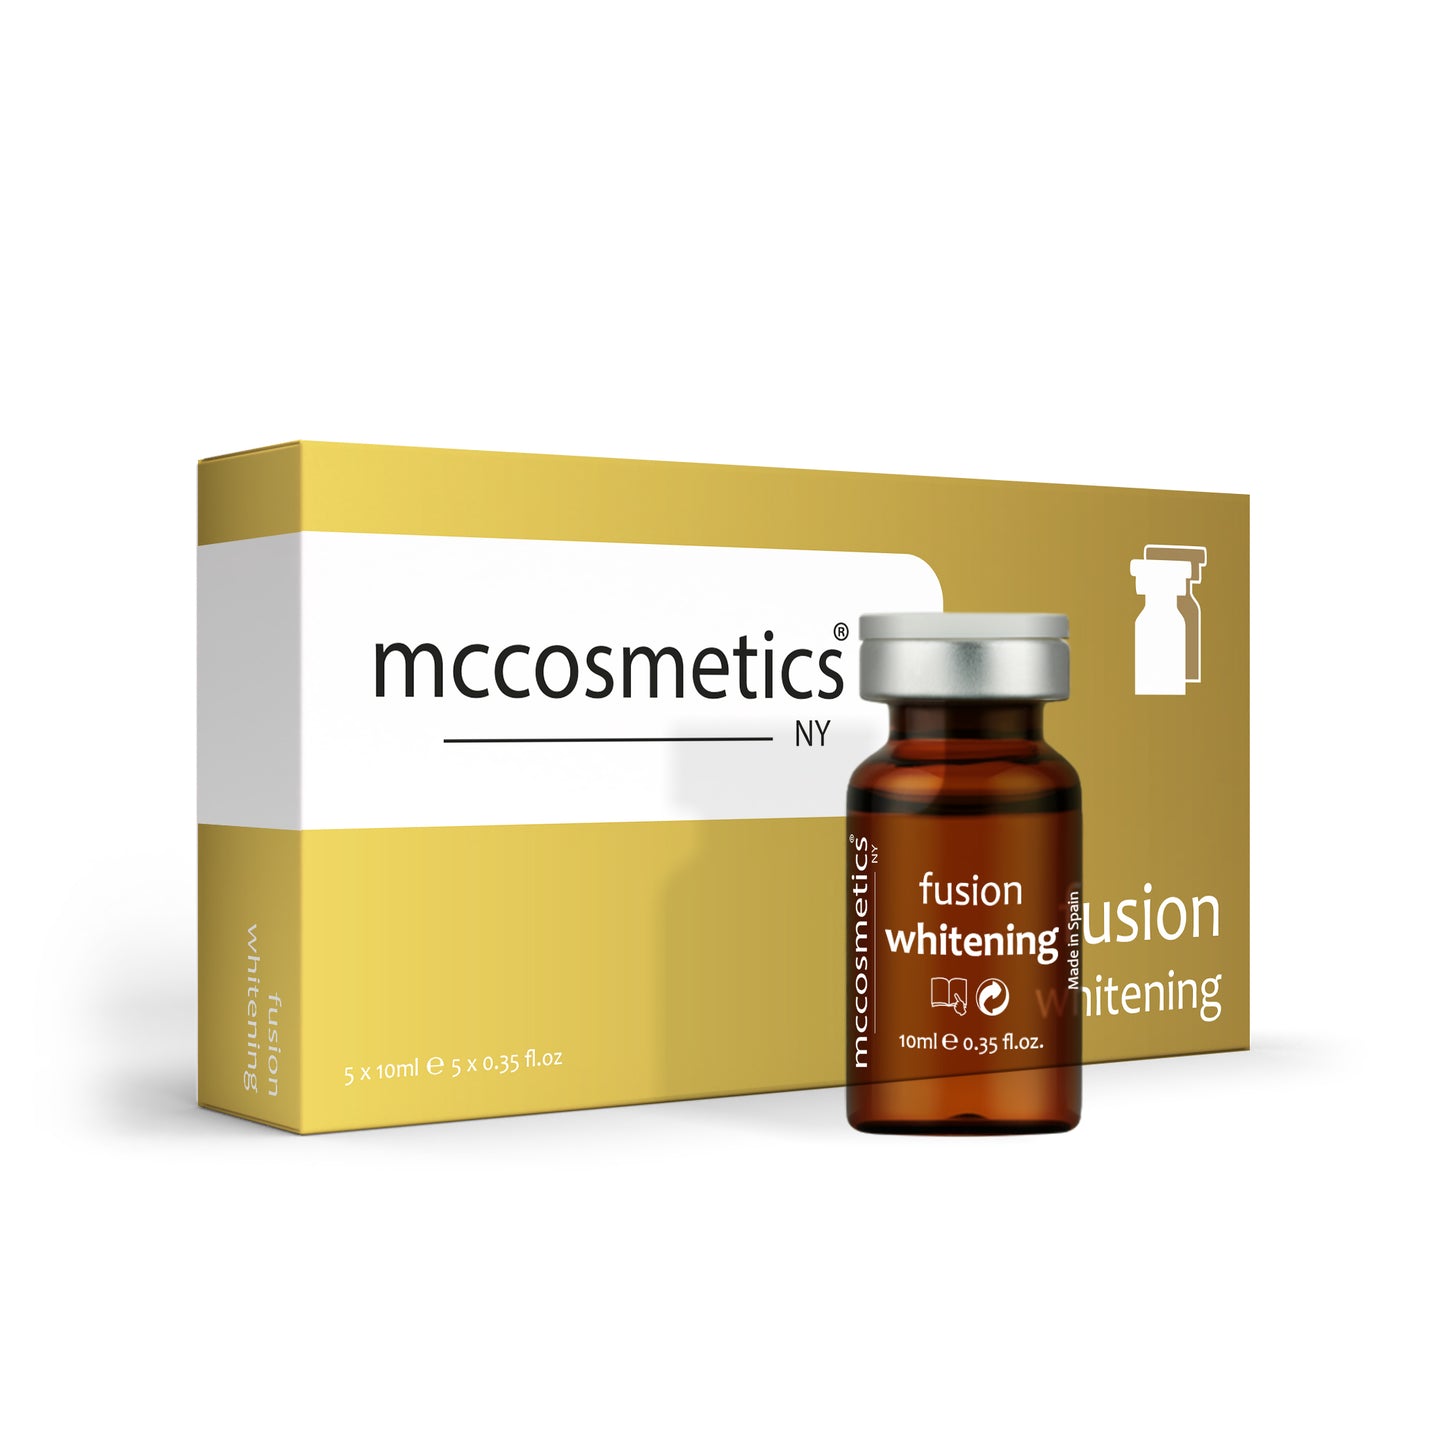 MCCosmetics NY | Fusion Whitening